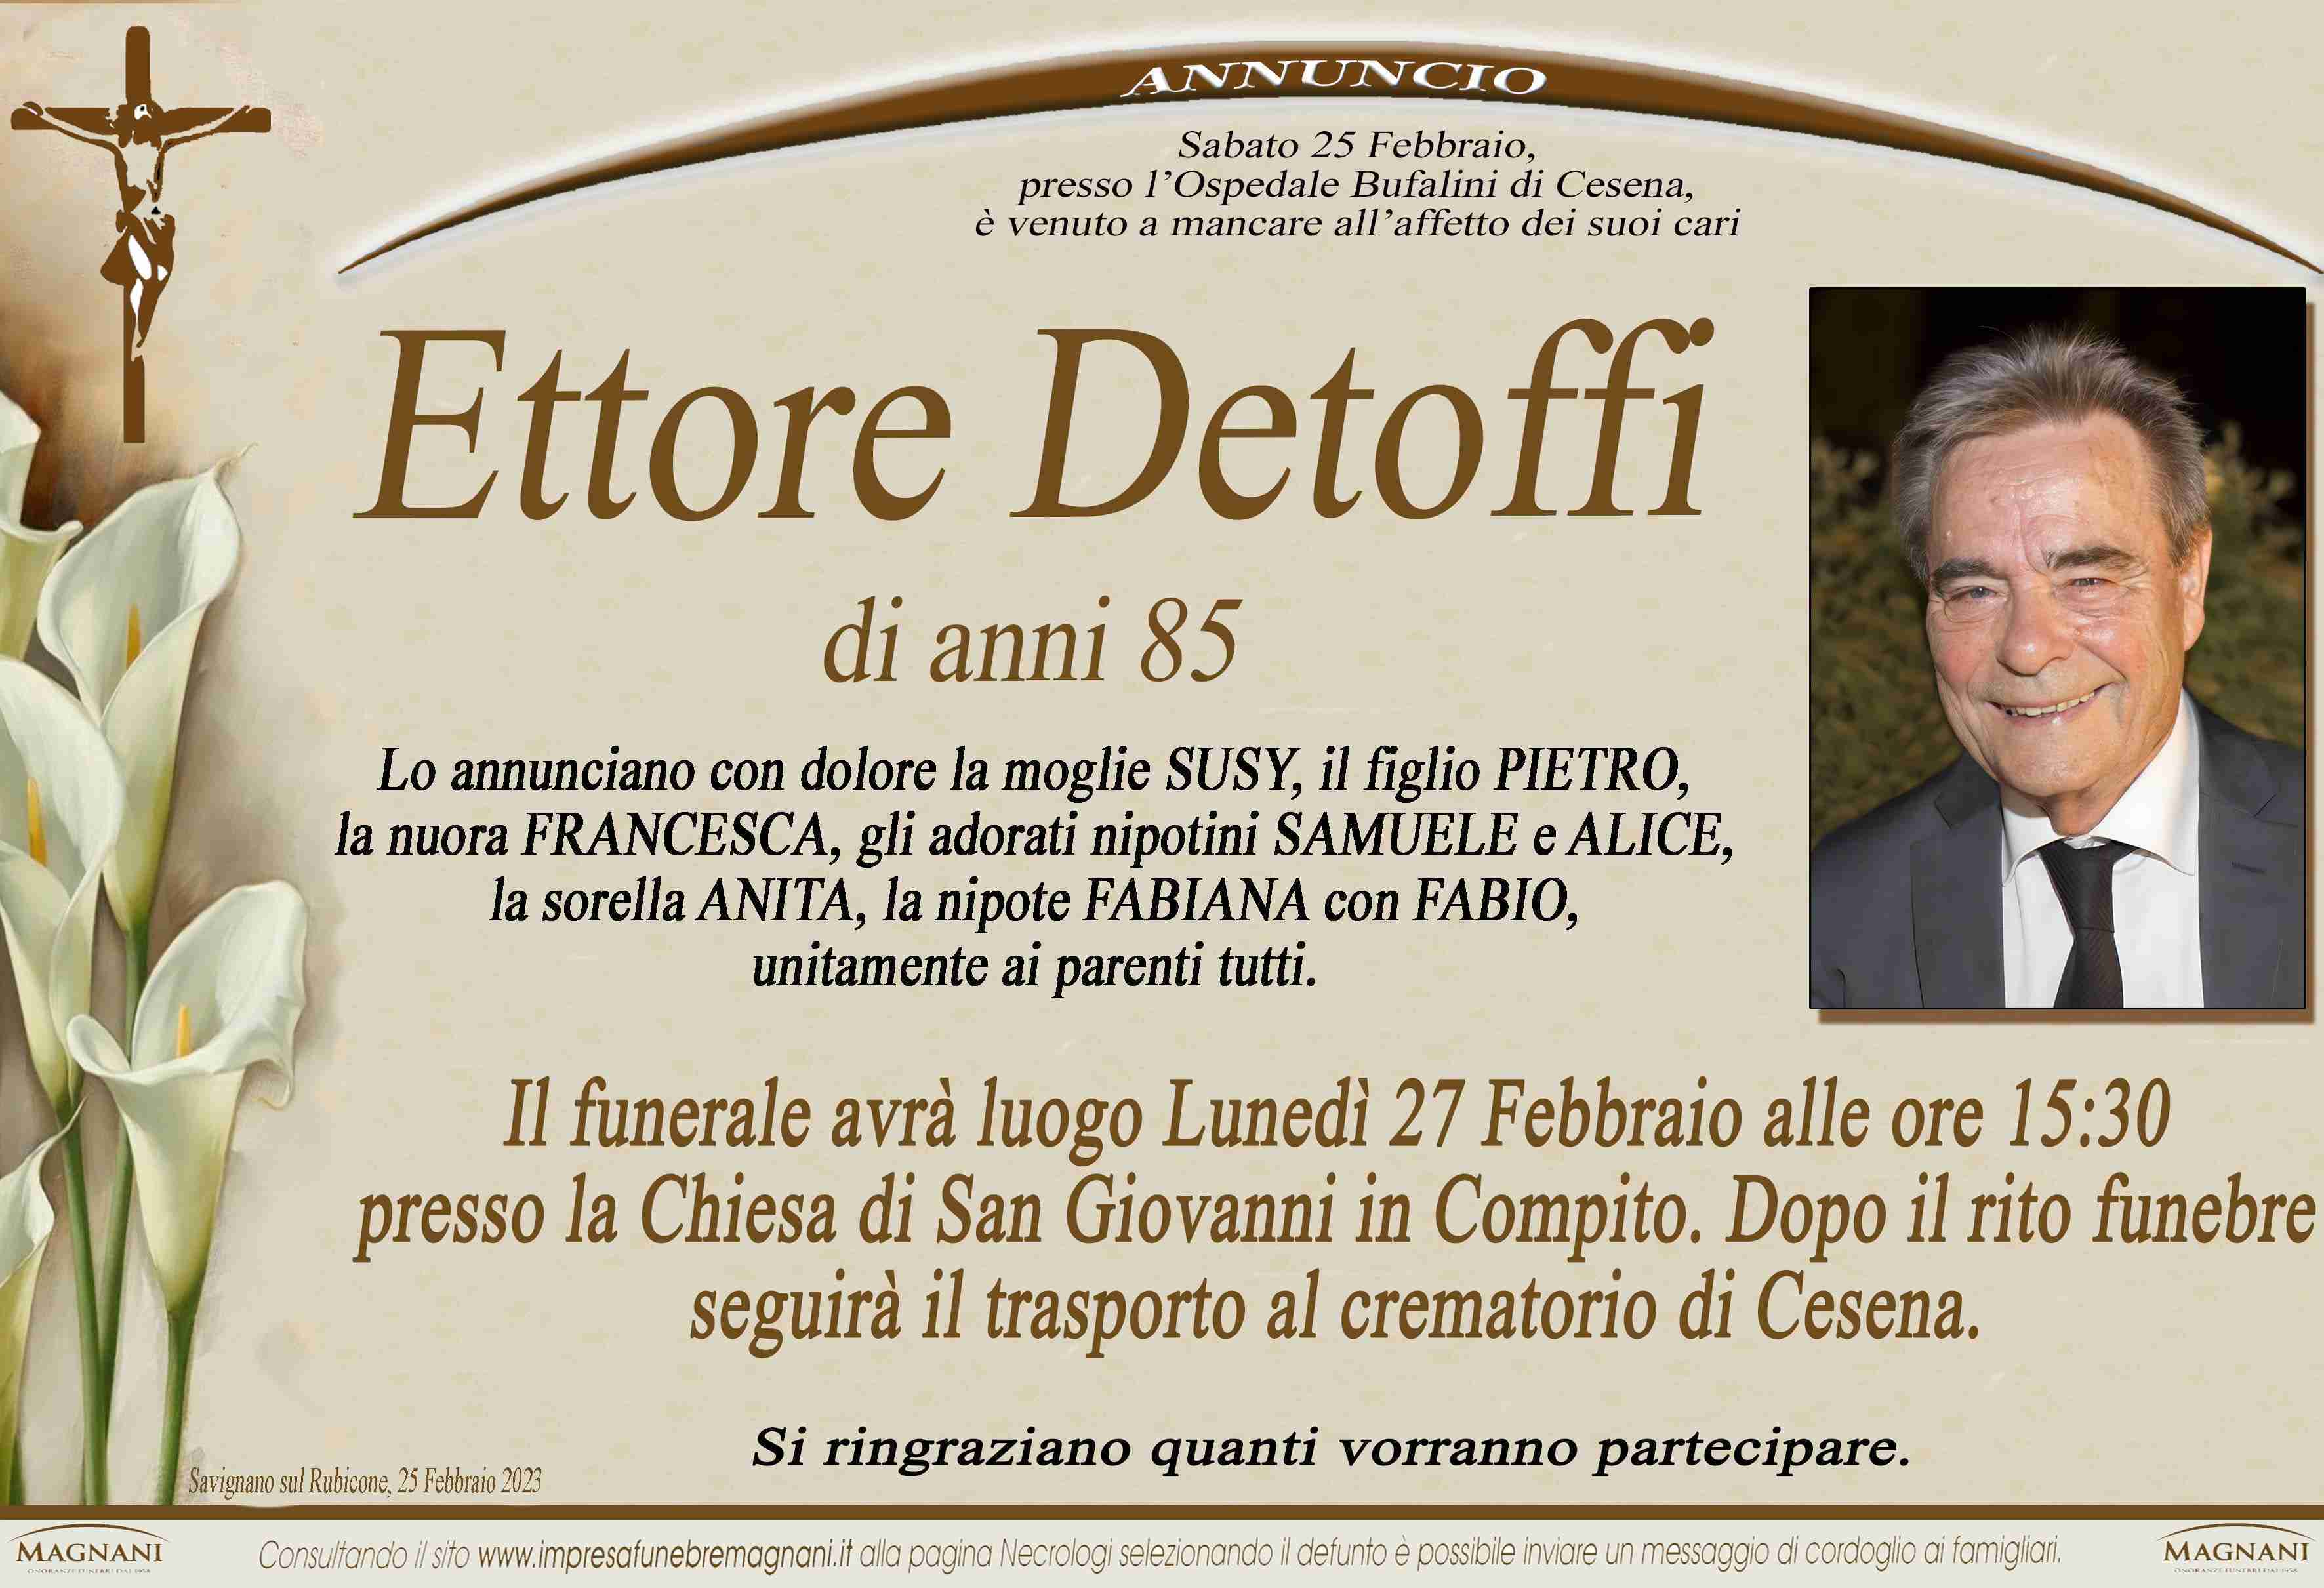 Ettore Detoffi